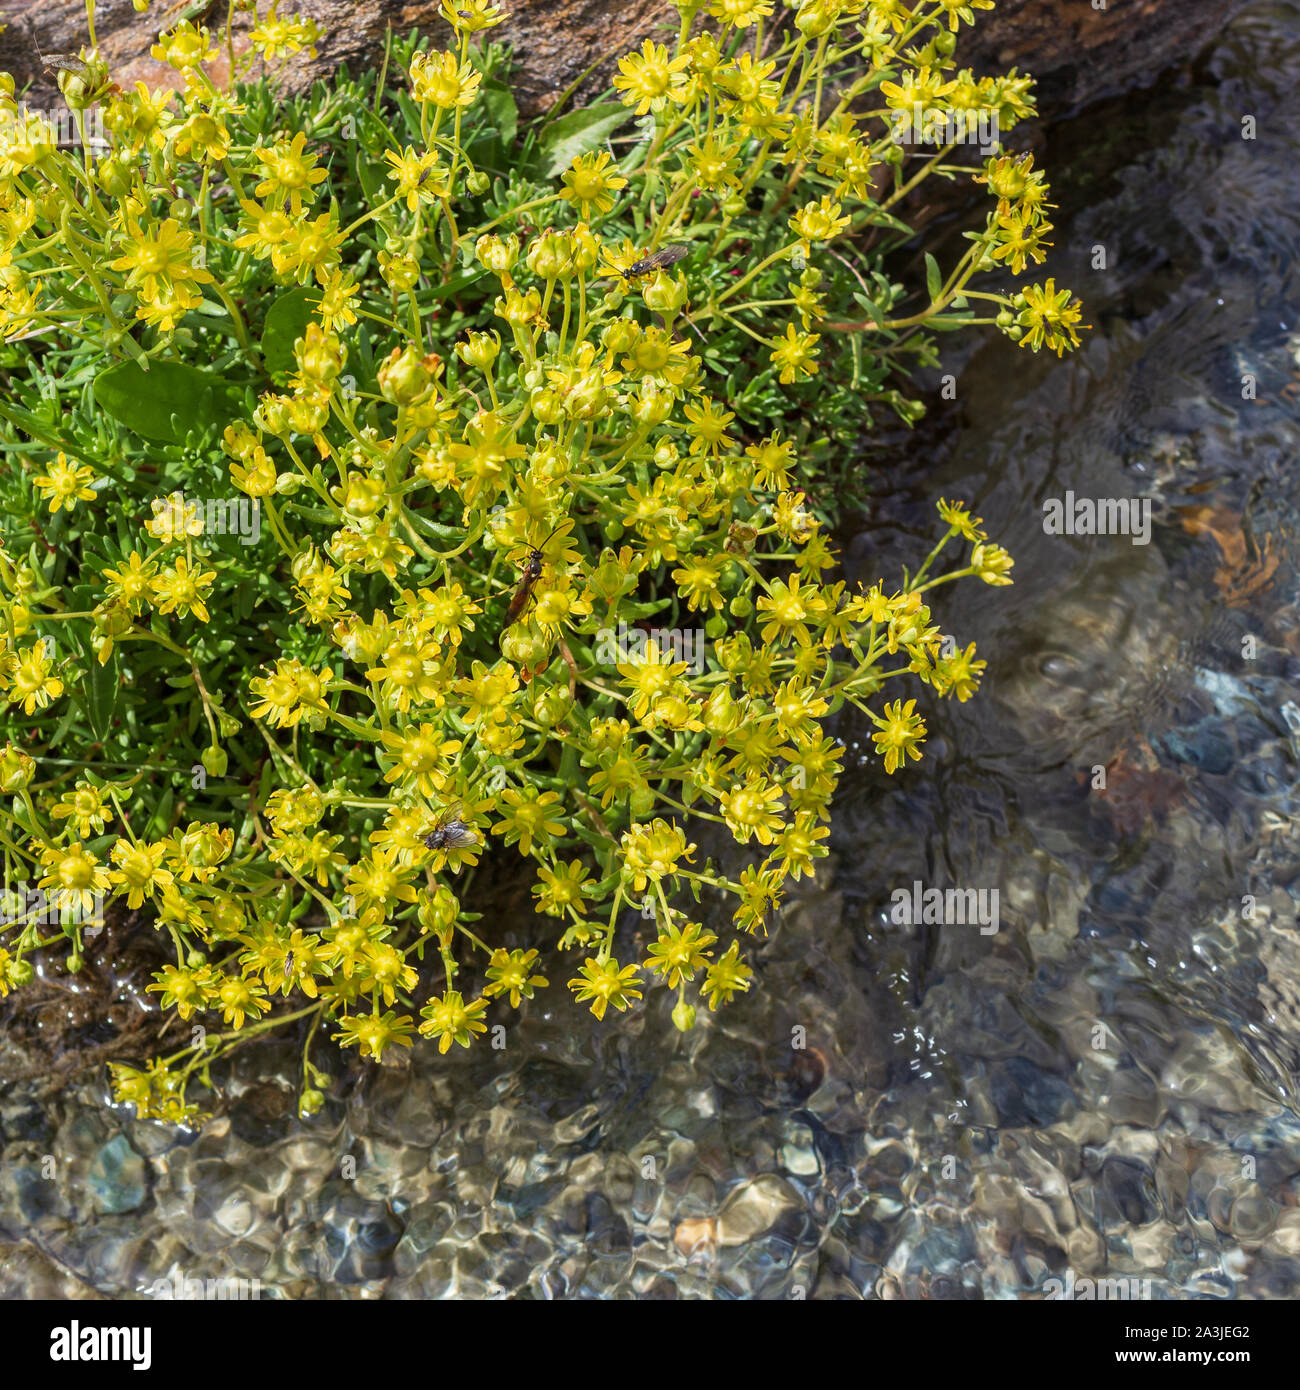 Alpine wild flower Saxifraga aizoides (yellow saxifrage) in a mountain stream. Aosta valley, Cogne, Italy. Stock Photo